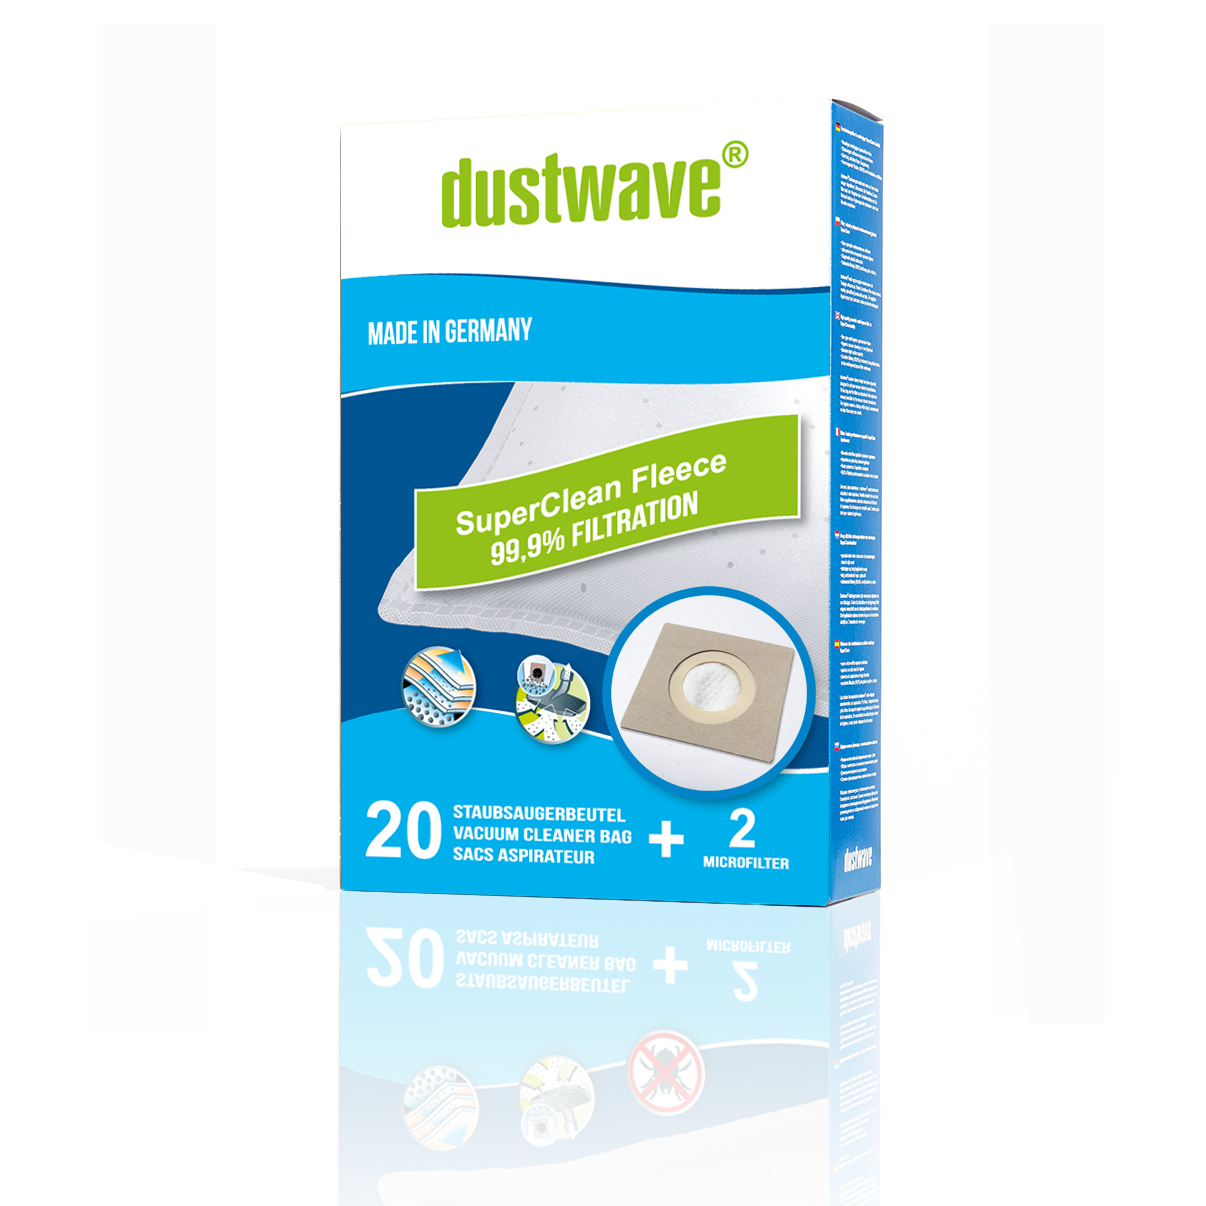 Dustwave® Premium 20 Staubsaugerbeutel für Hoover TX52ALG 011 Telios Extra - hocheffizient, mehrlagiges Mikrovlies mit Hygieneverschluss - Made in Germany